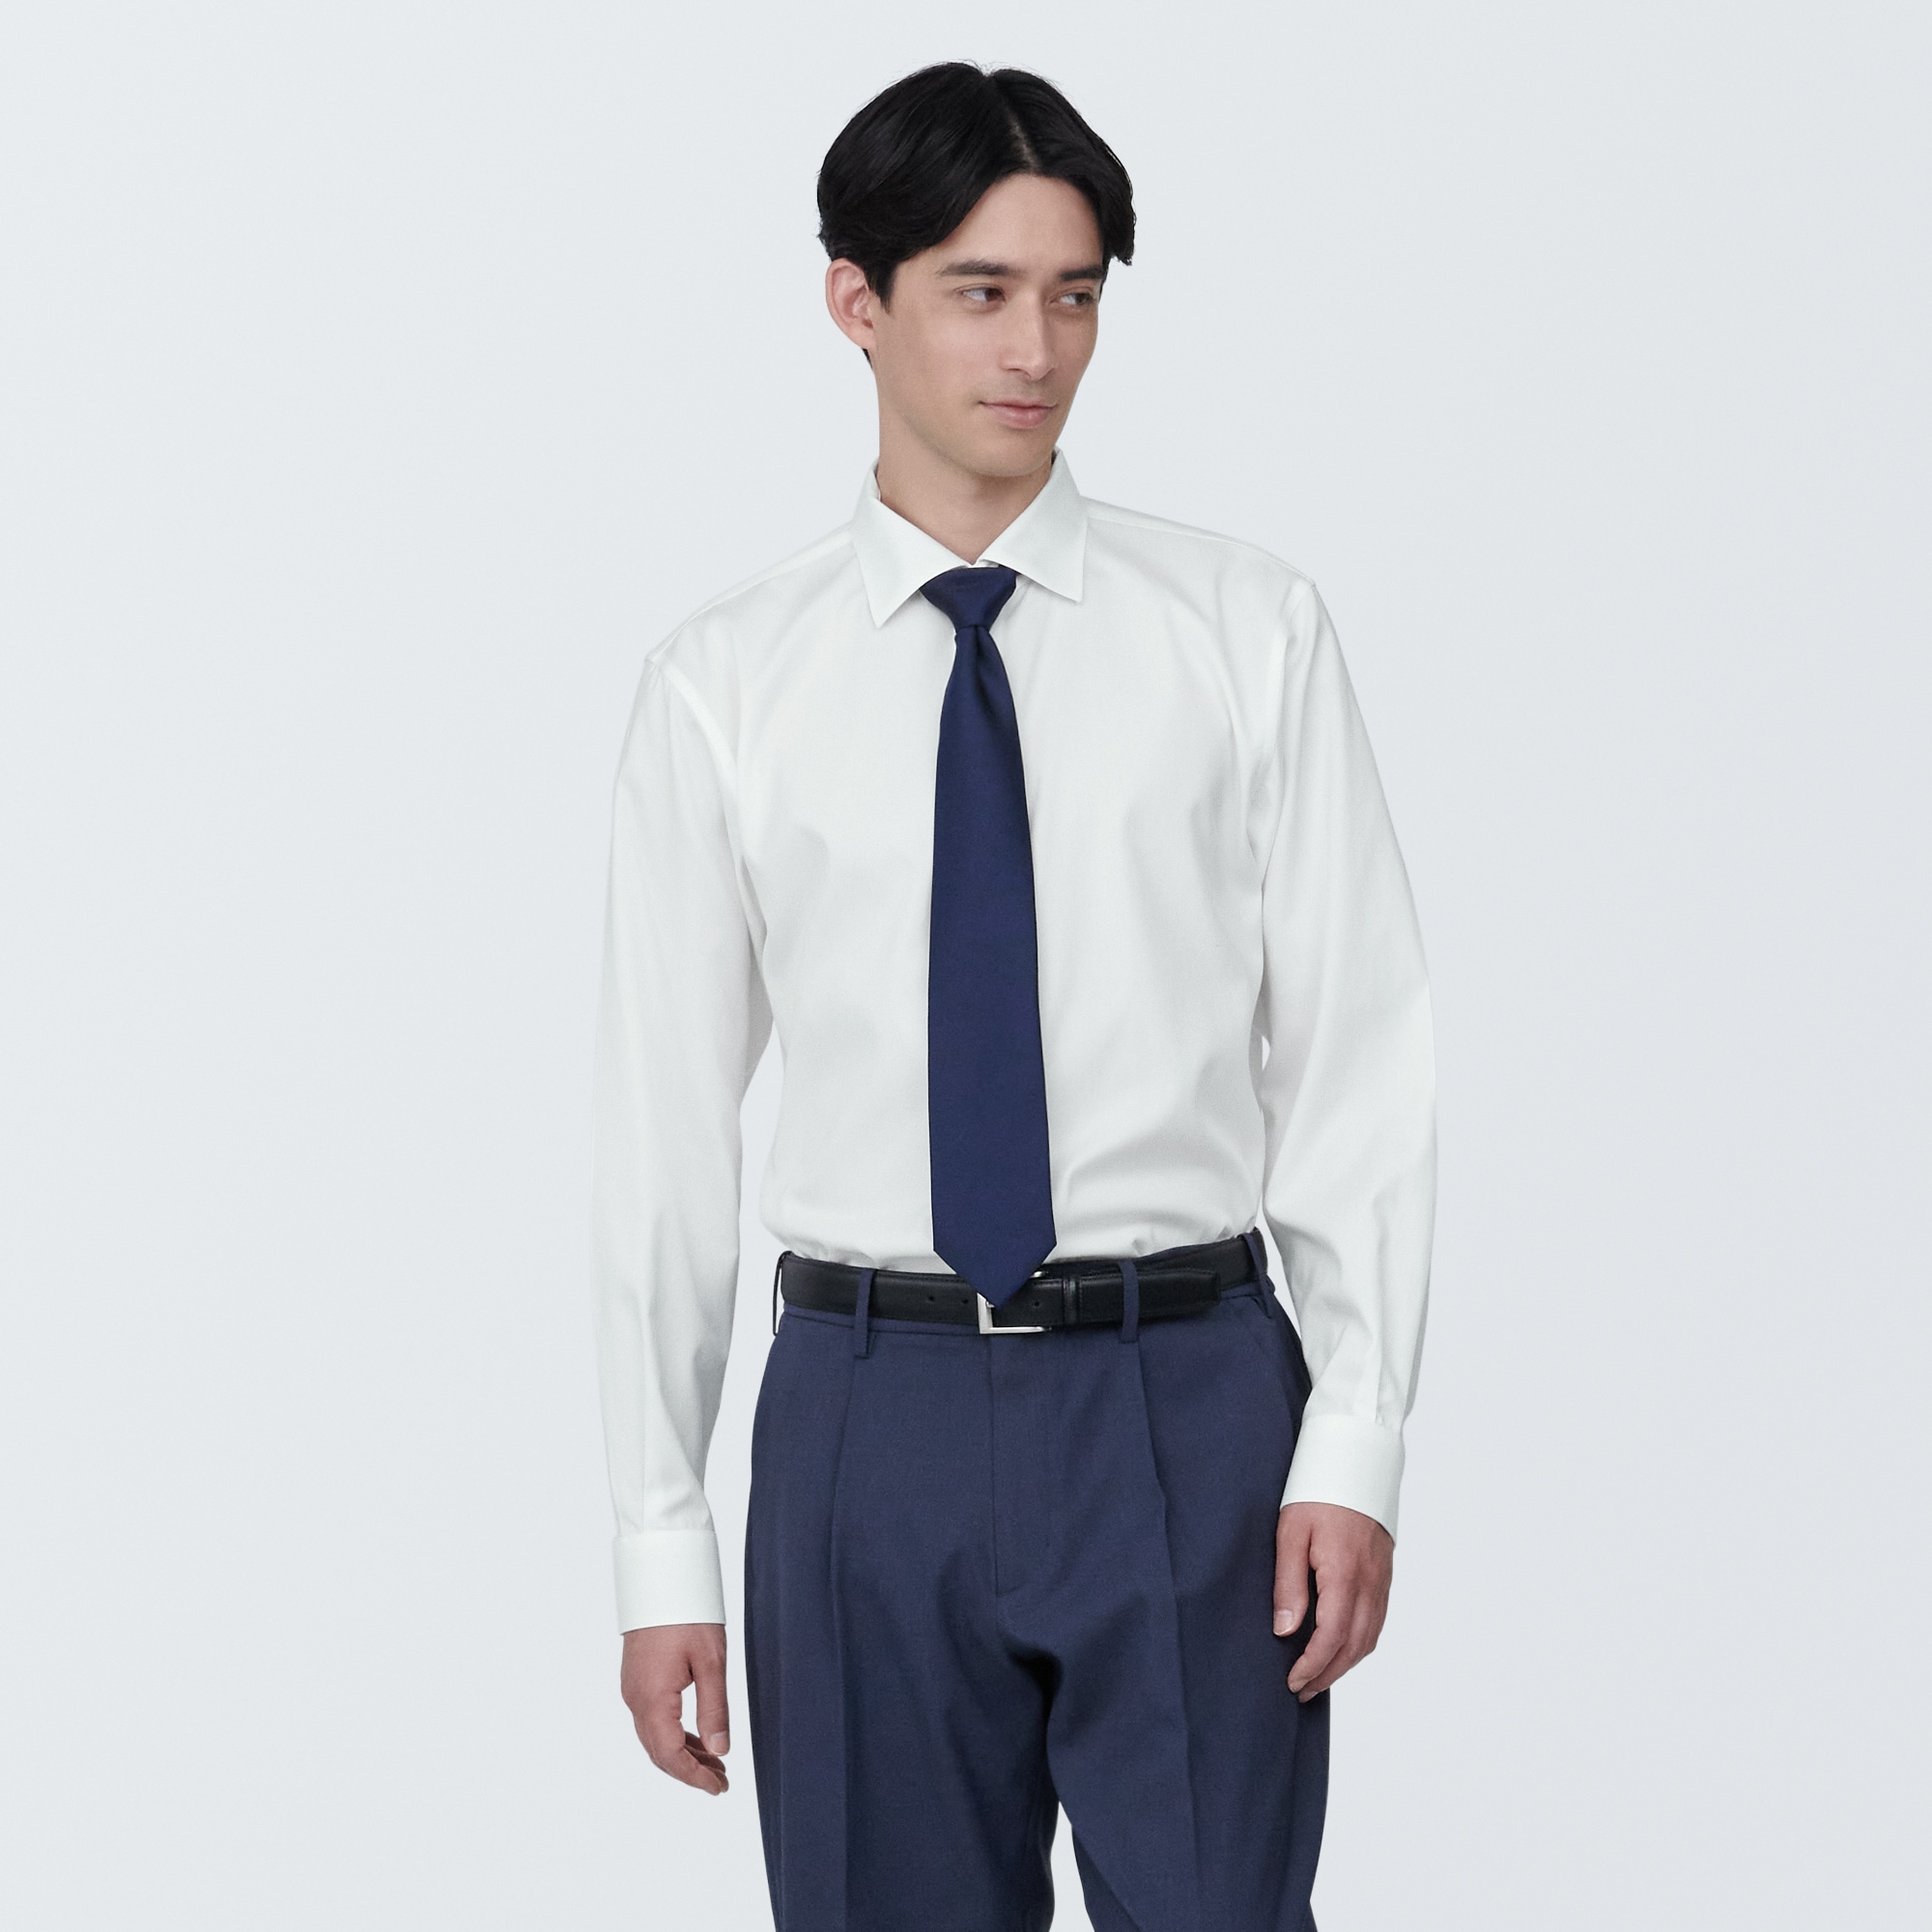 무인양품 일본 신사 다림질 필요없는 세미 와이드 컬러 긴소매 셔츠